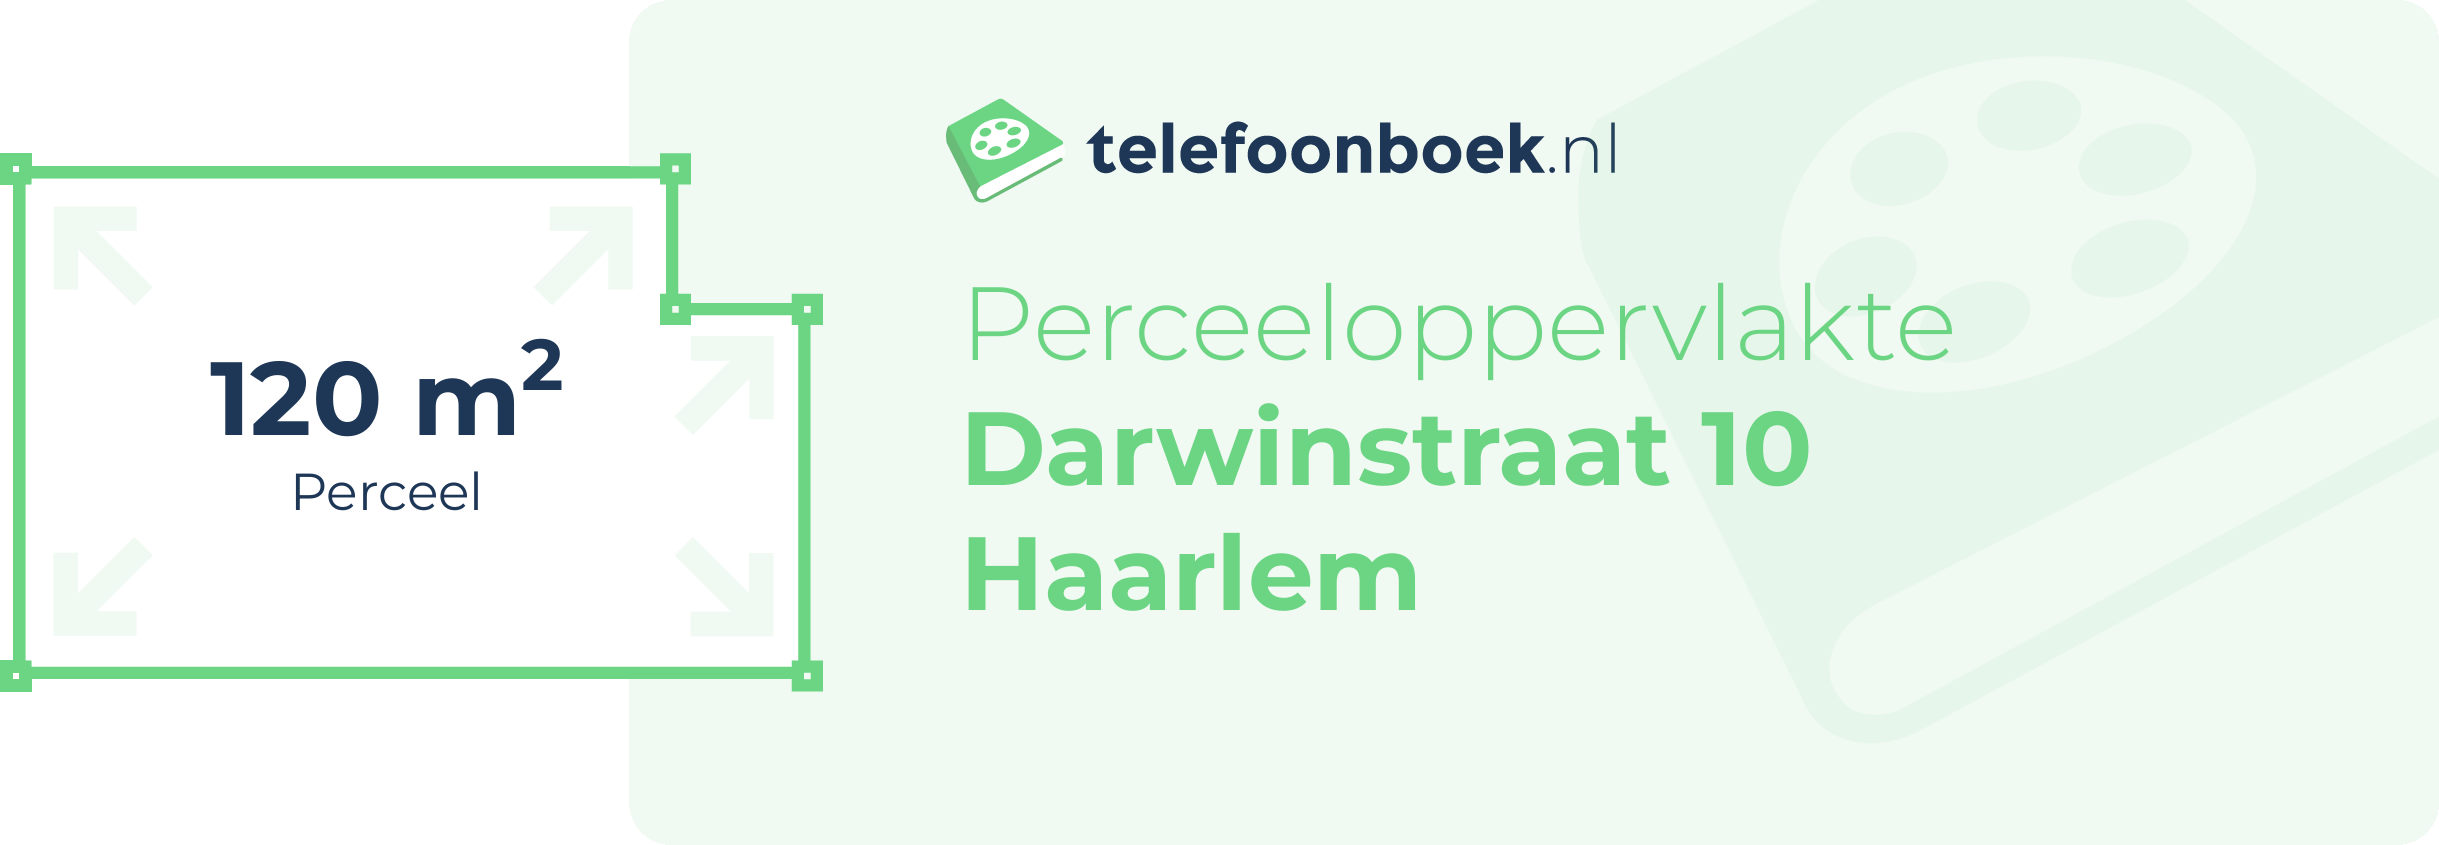 Perceeloppervlakte Darwinstraat 10 Haarlem